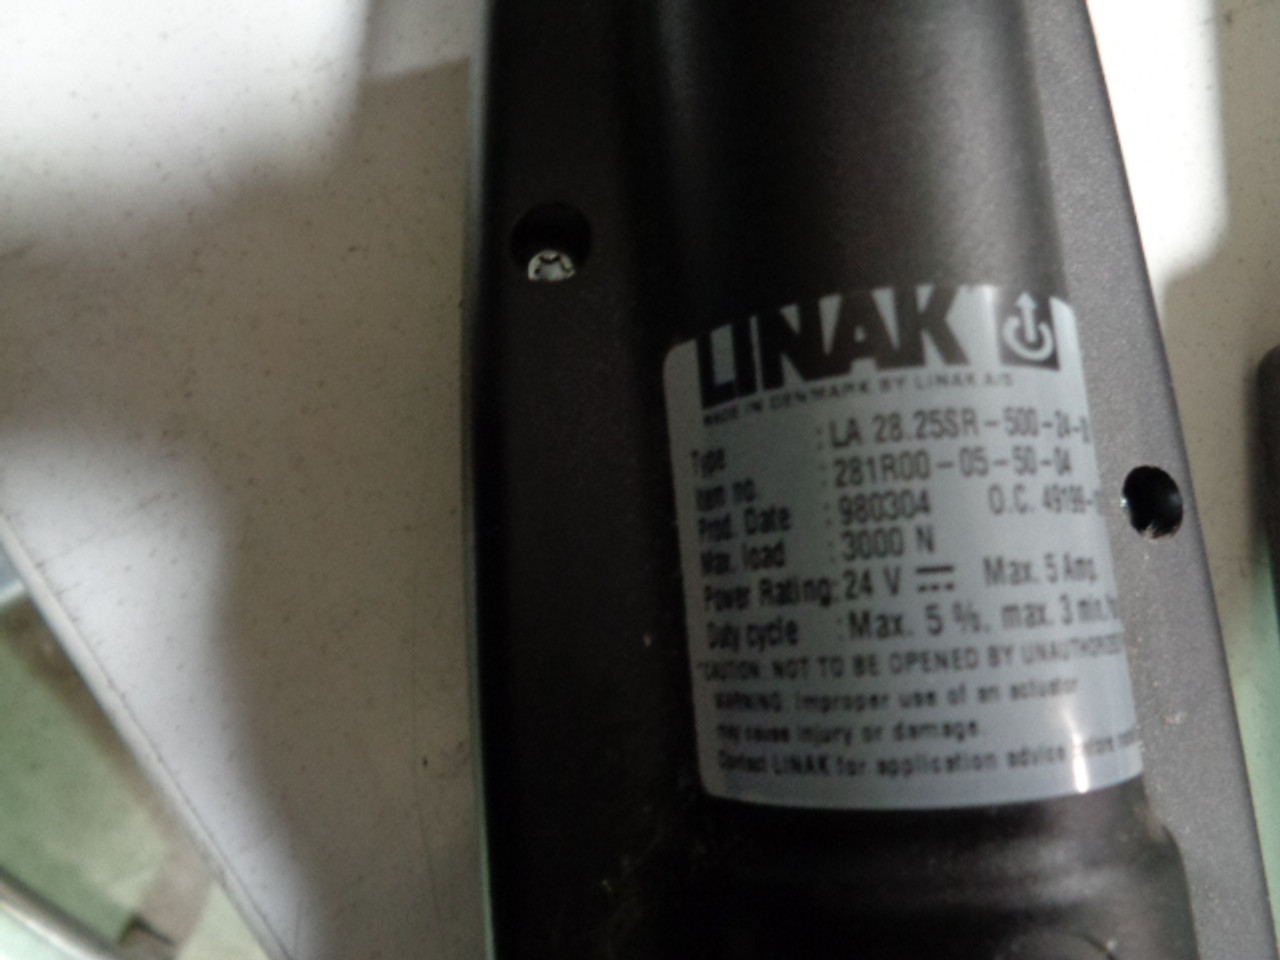 Linak  281R00-05-50-04 Conceptronics Actuator 3000N Max Load 24V 5 Amps Max1